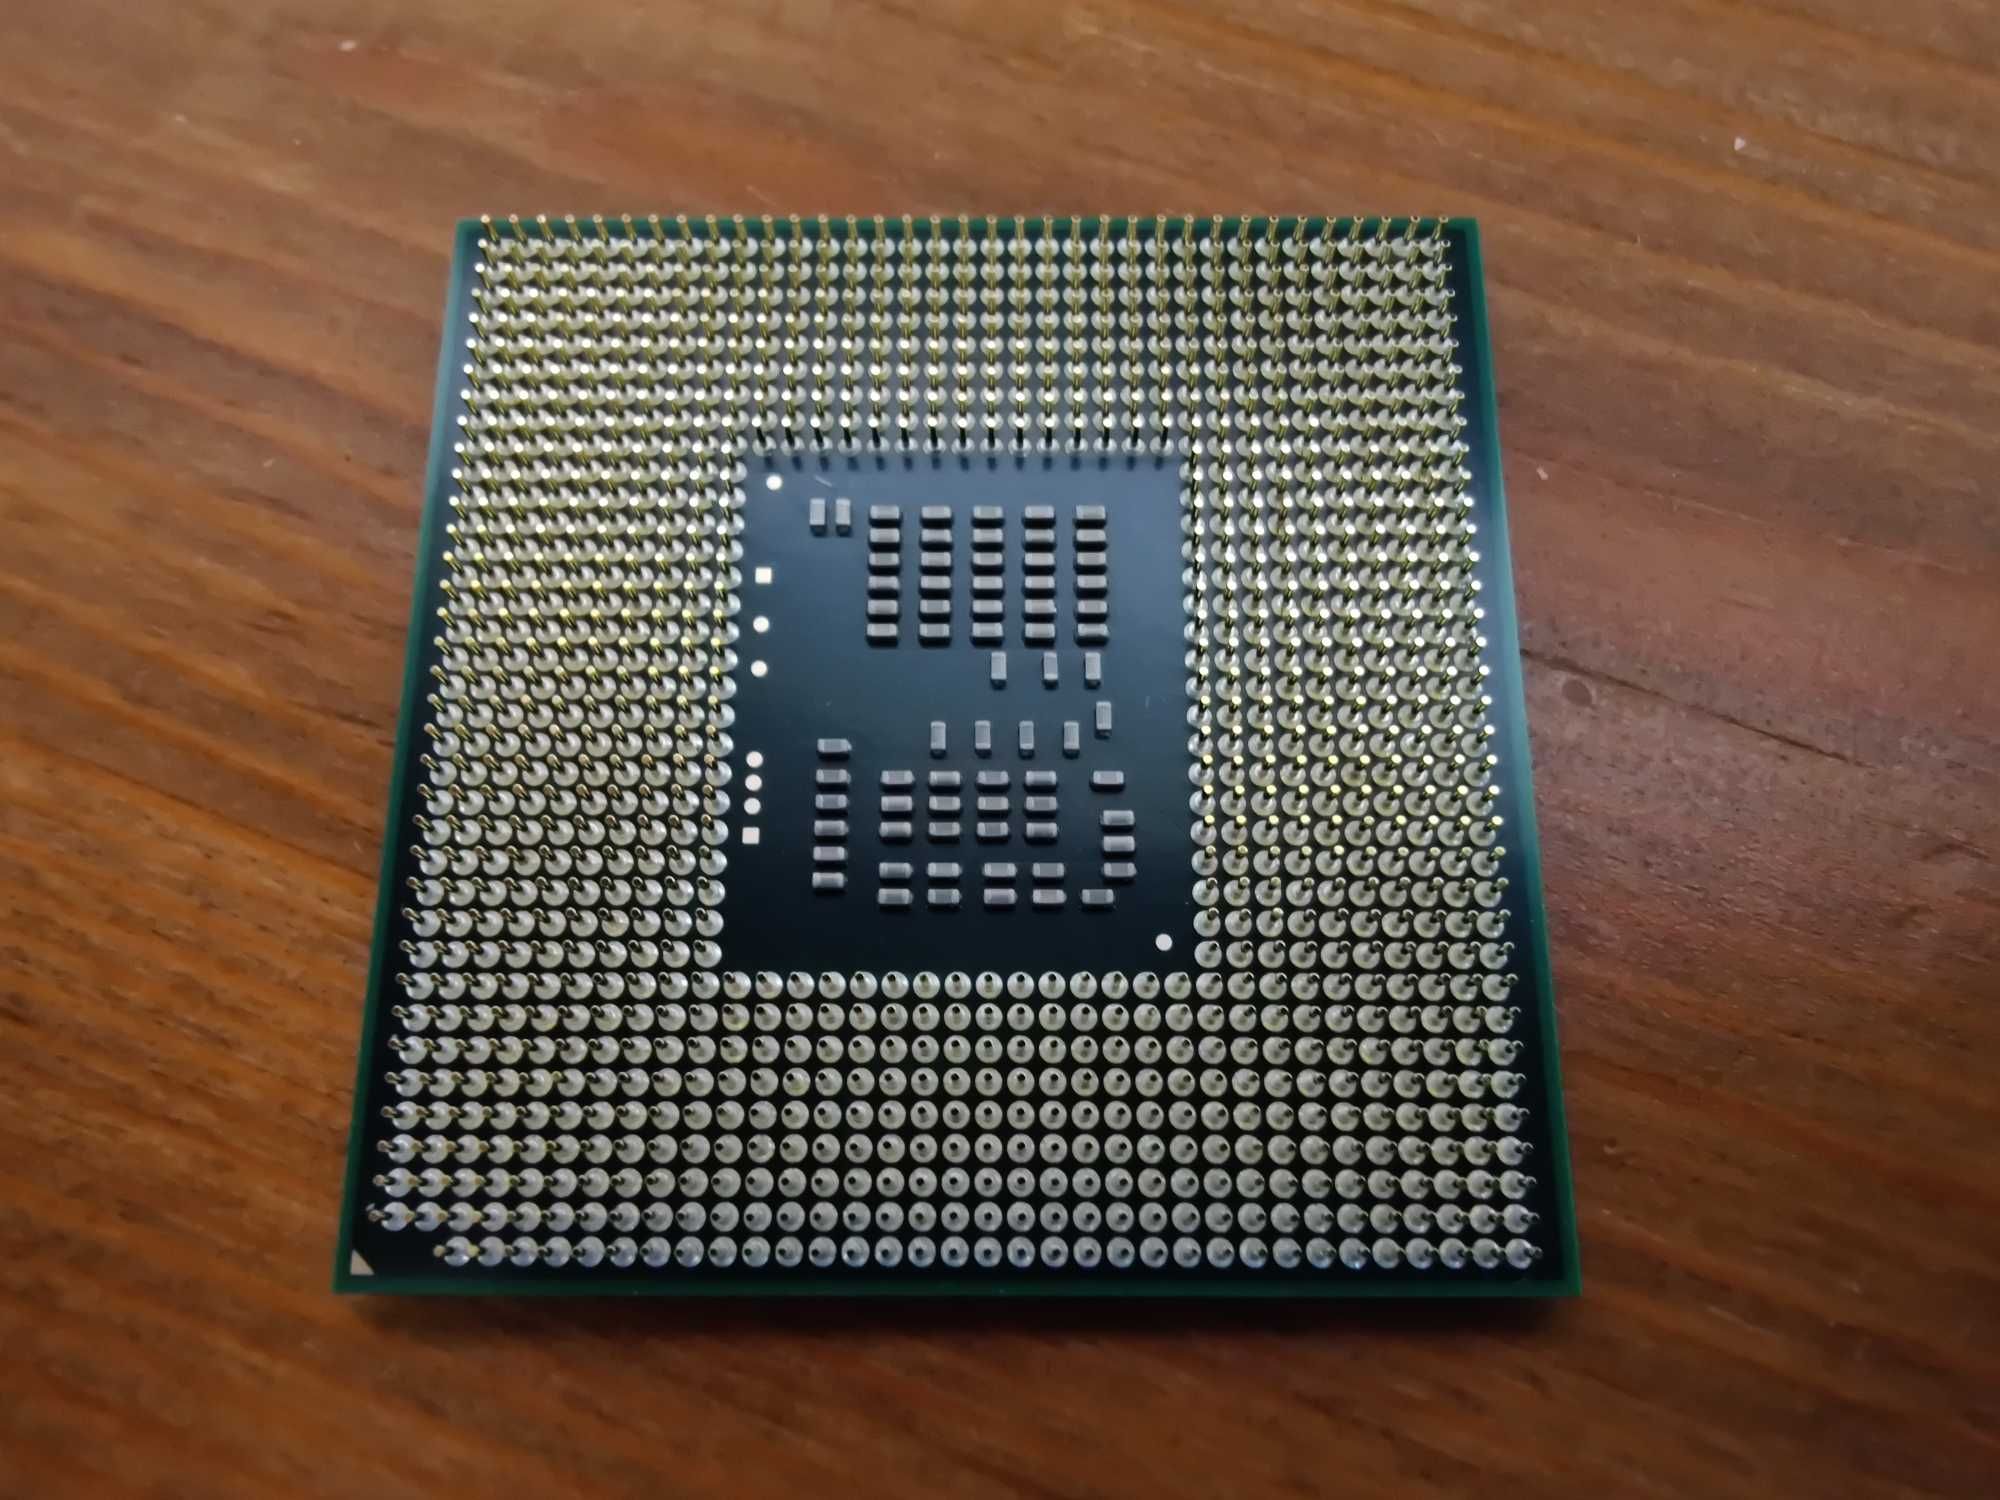 Procesor Intel Pentium P6200